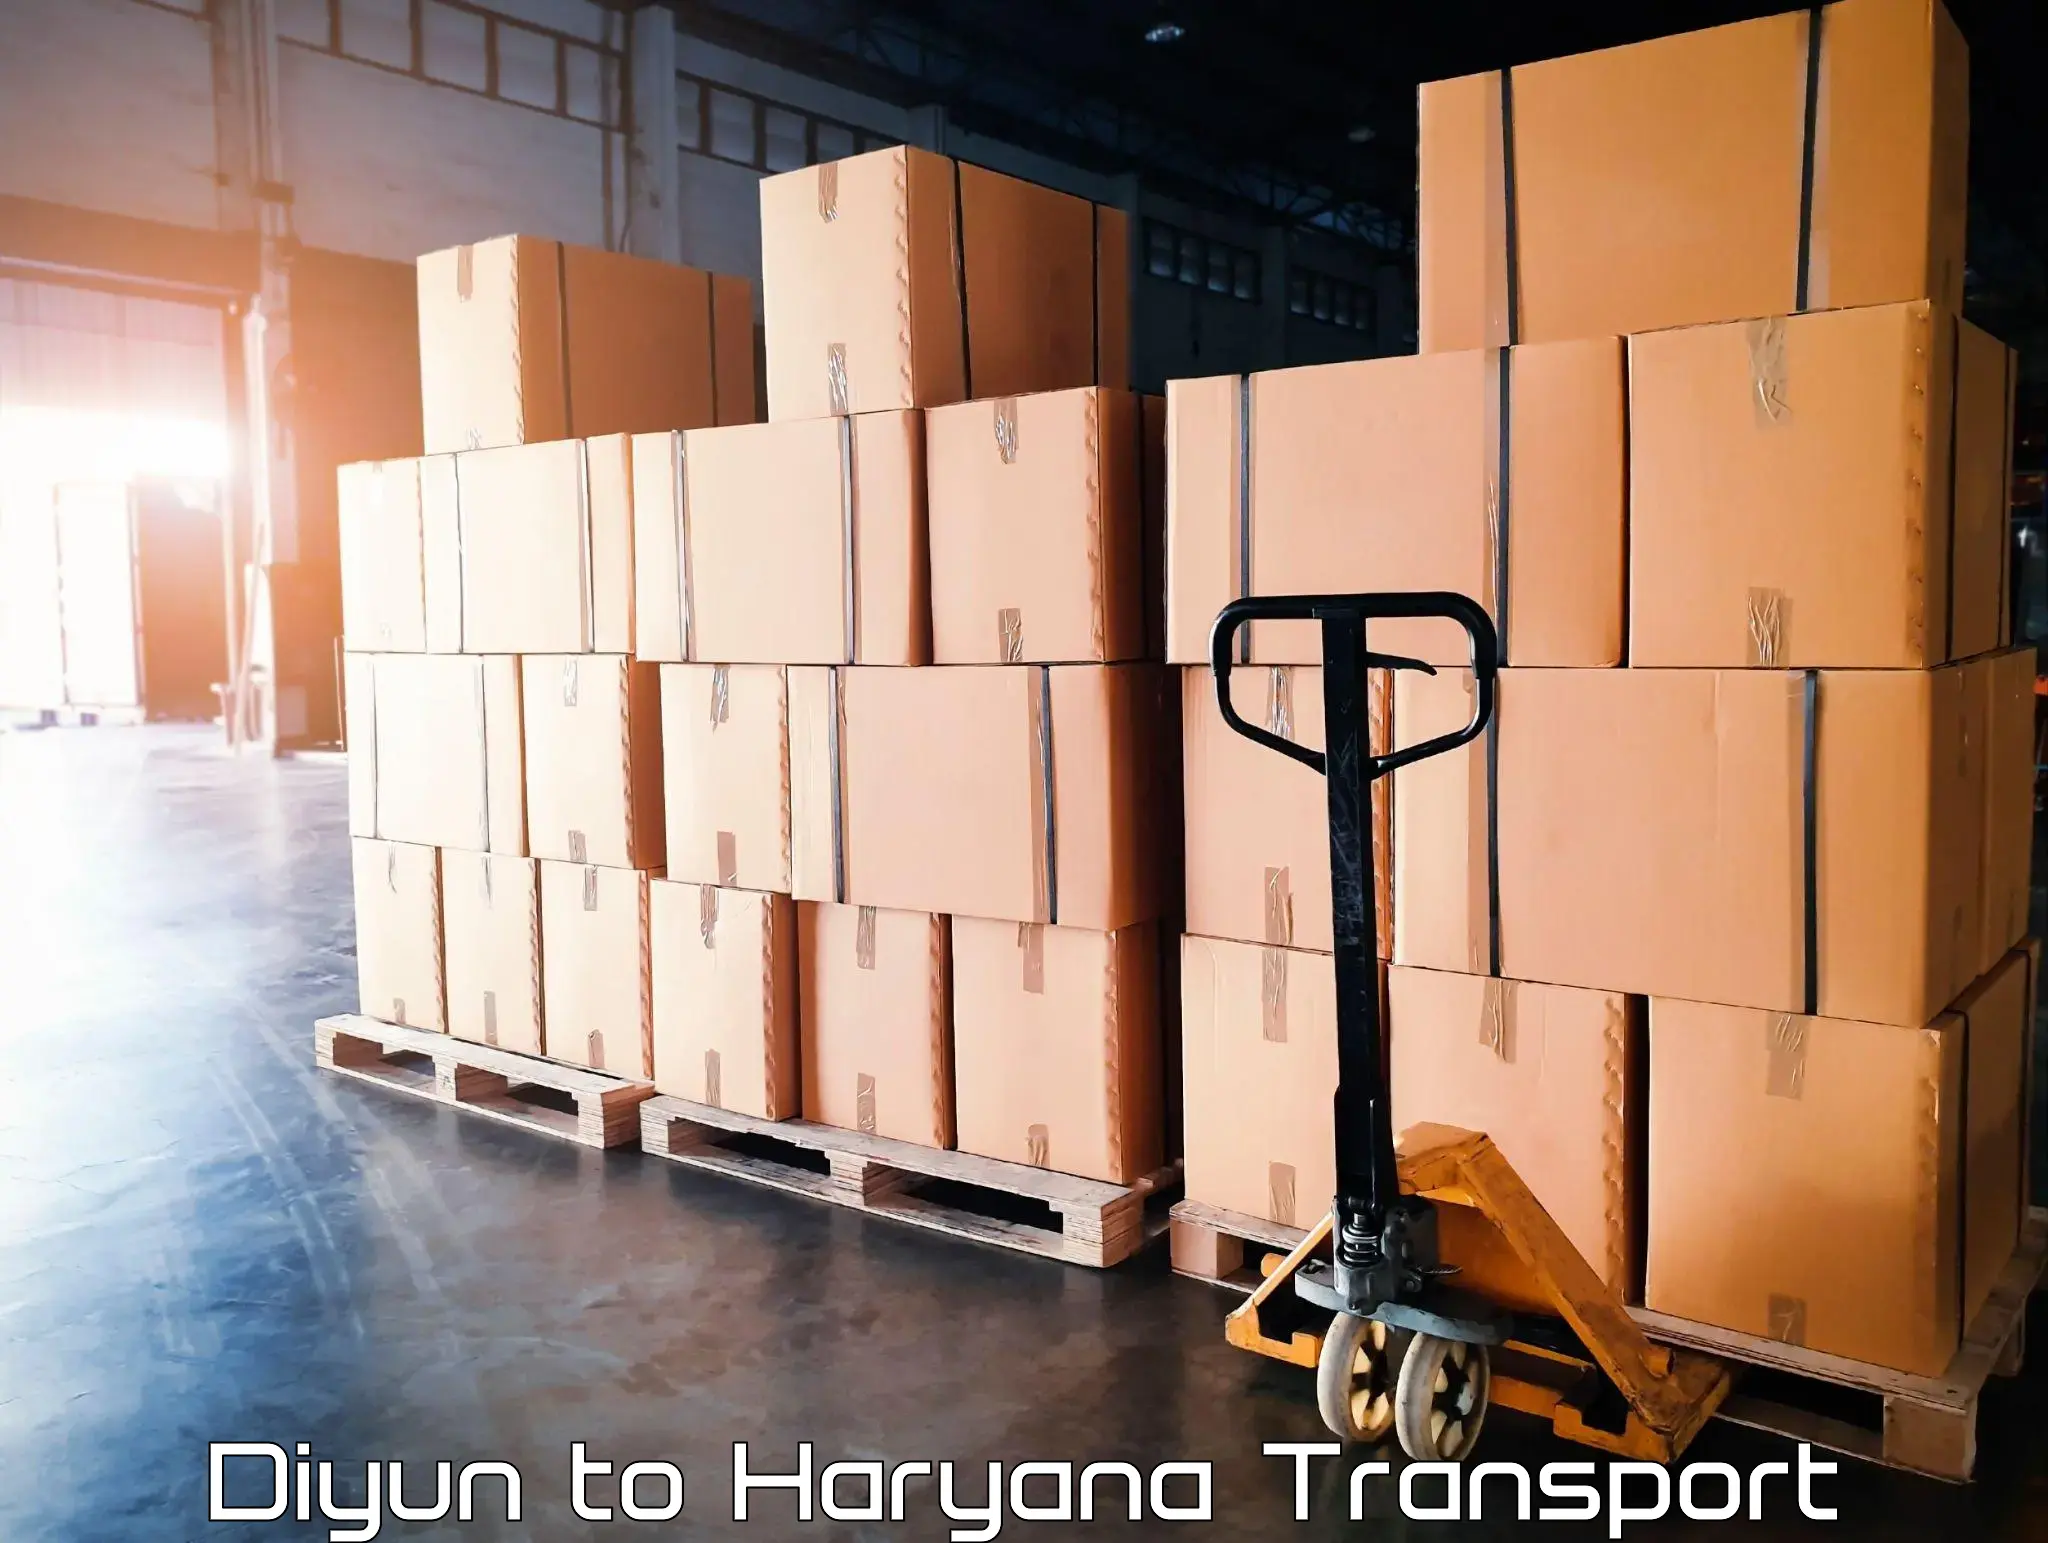 Intercity transport Diyun to Chaudhary Charan Singh Haryana Agricultural University Hisar